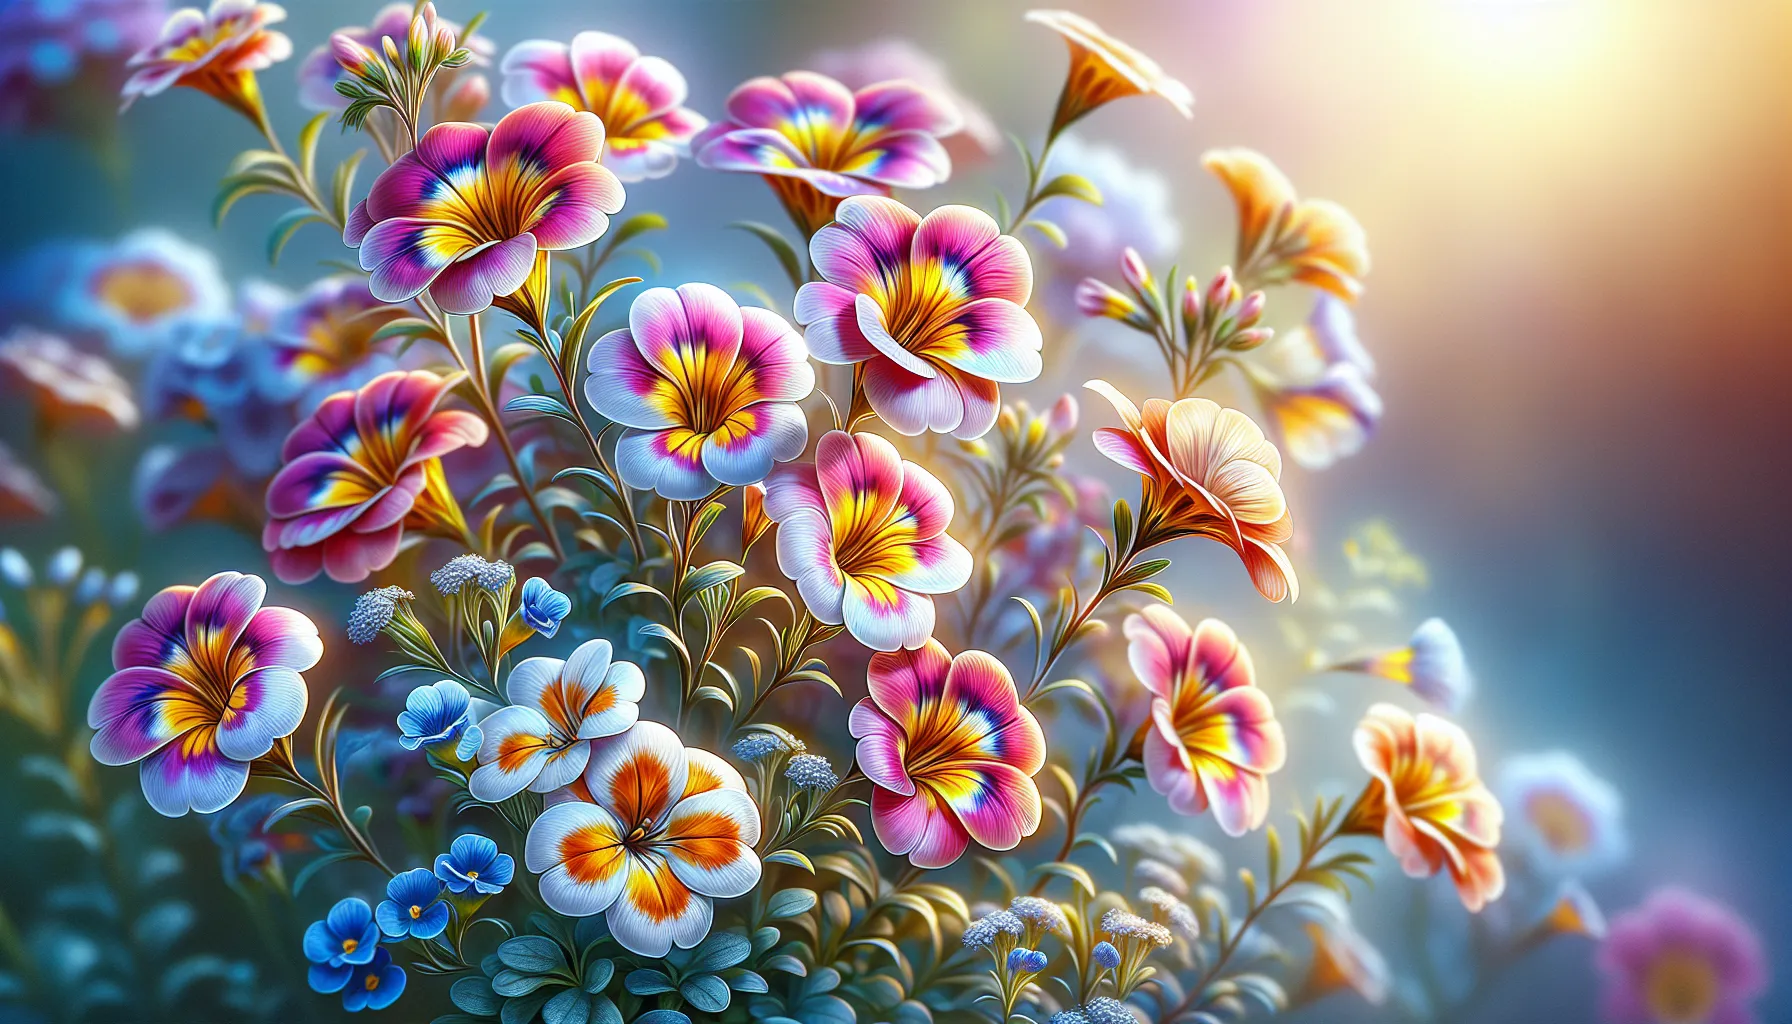 Imagen de una hermosa planta nemesia, resaltando sus vibrantes colores y delicadas flores, la cual se conoce como la joya del Cabo y requiere cuidados especiales para florecer en todo su esplendor.